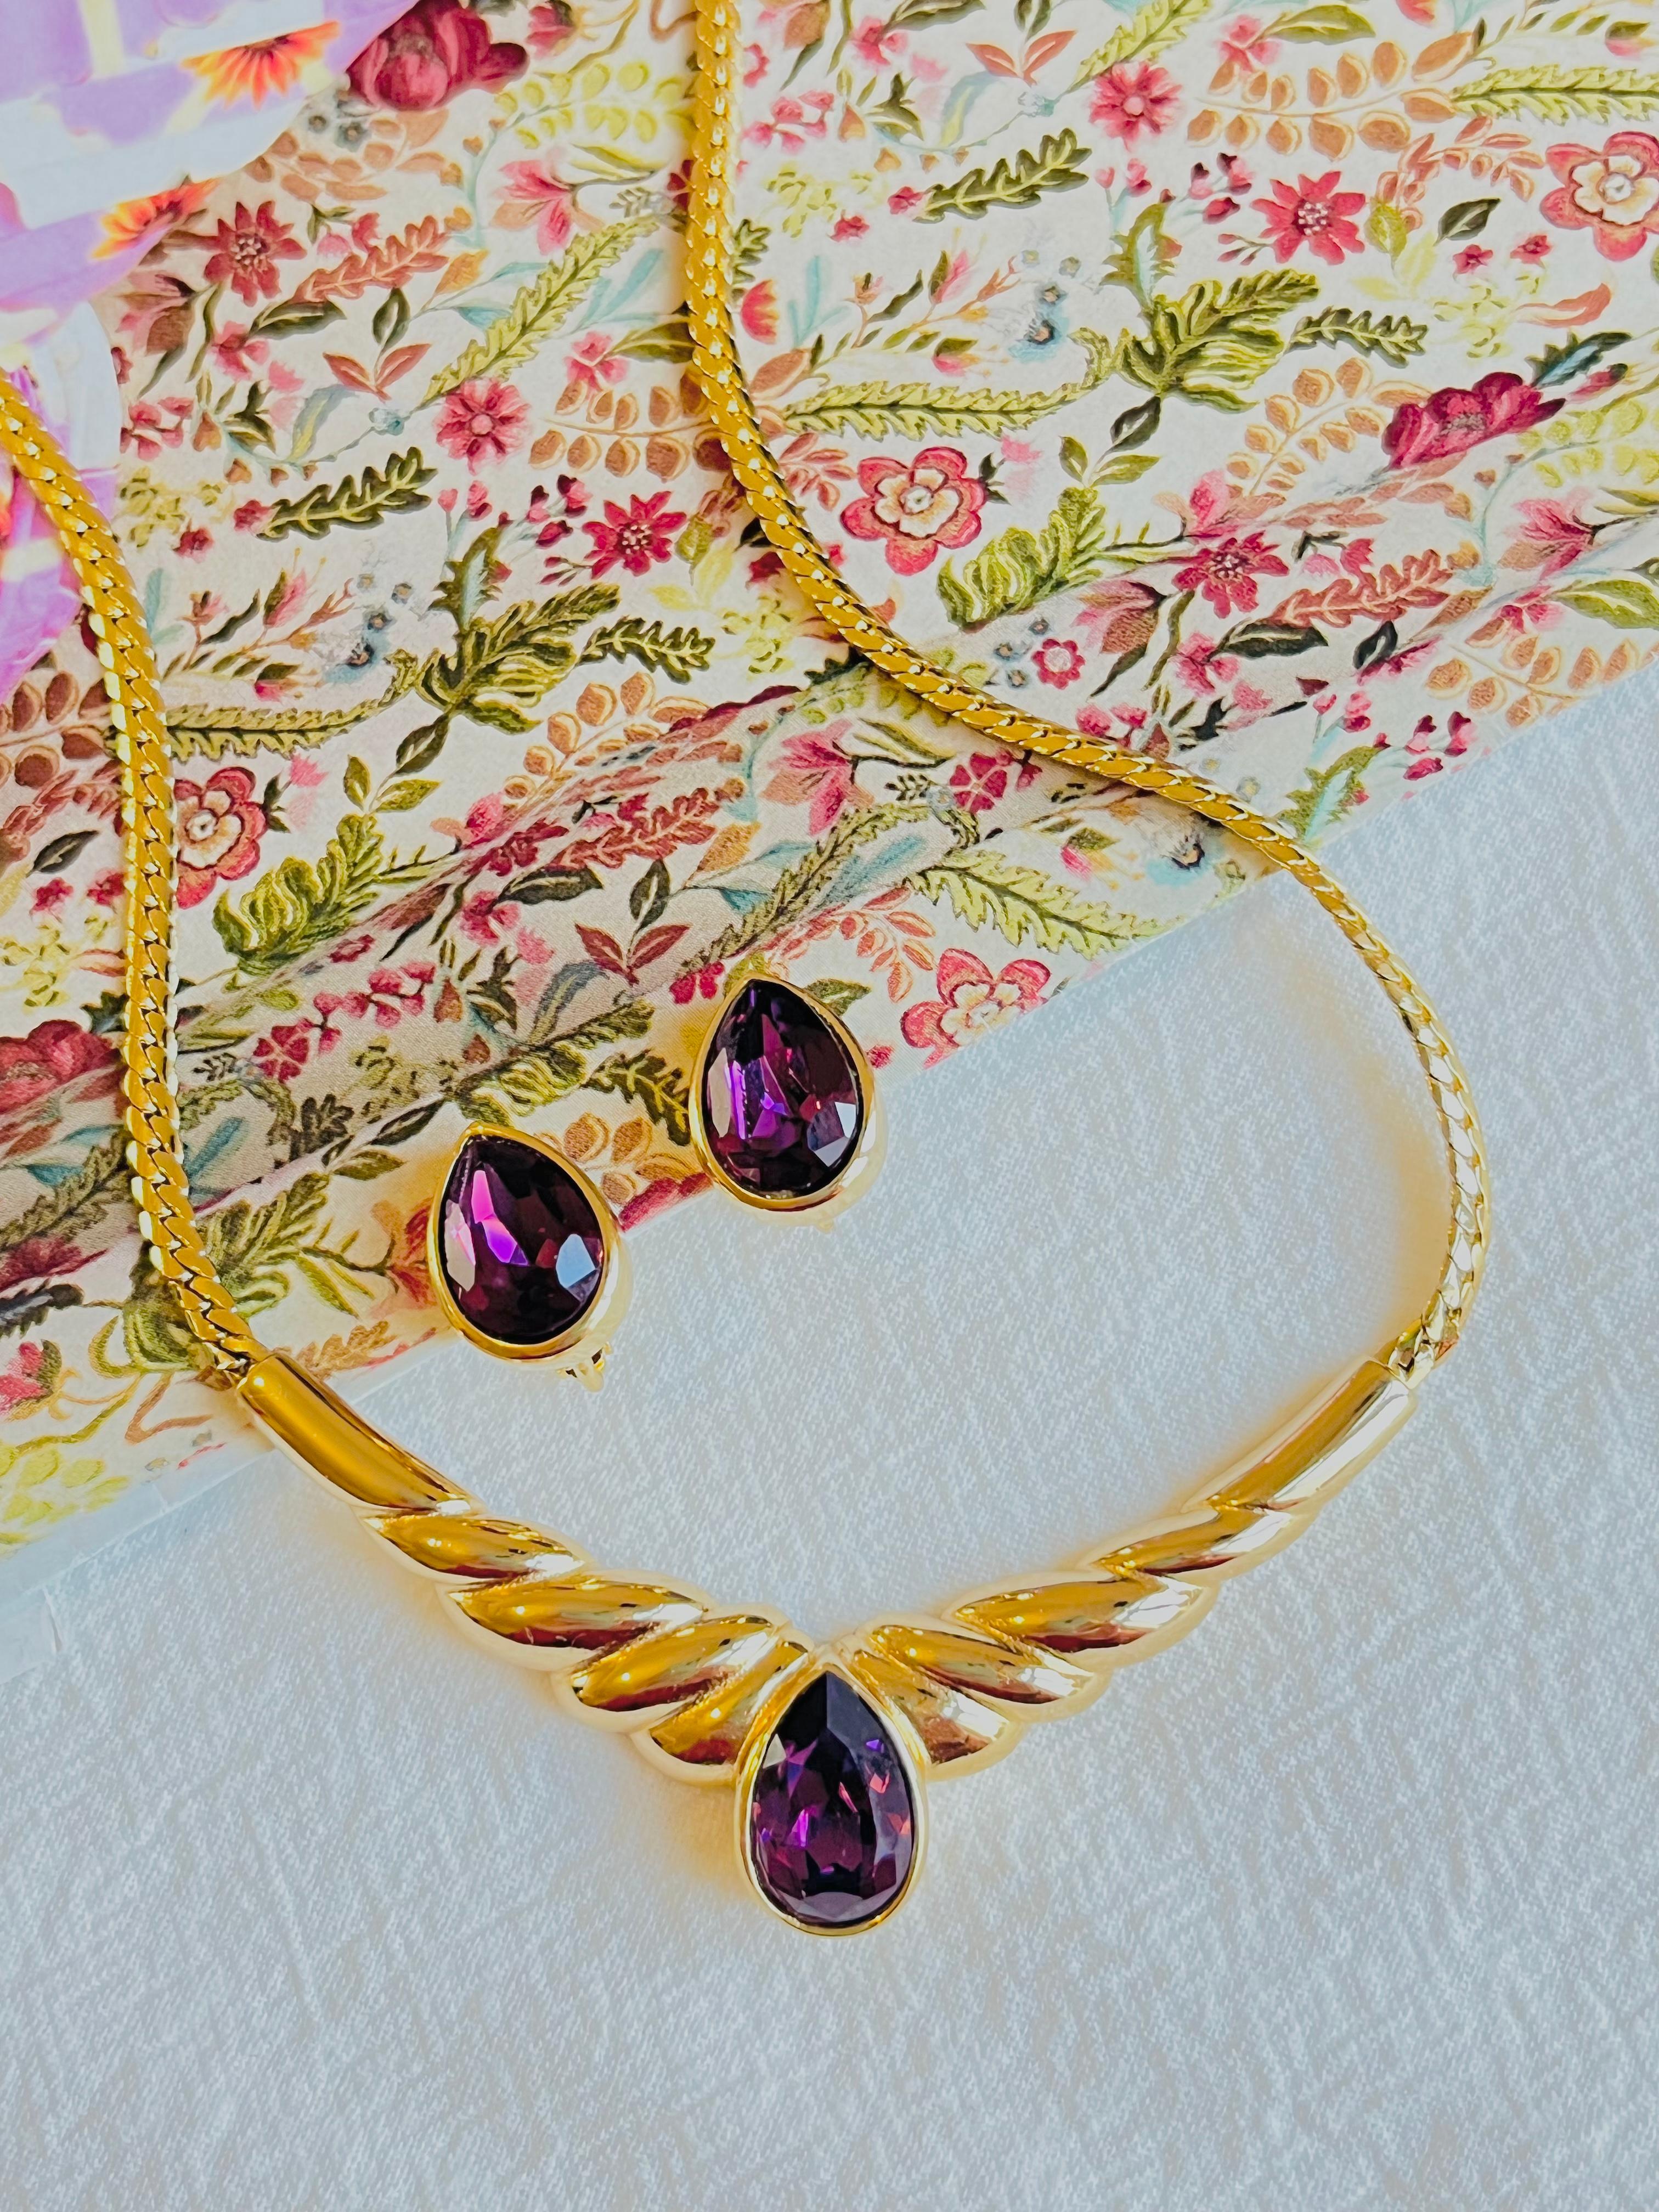 Christian Dior Vintage 1980s Purple Amethyst Tear Drop Gift Set Necklace Earrings Gold Tone

Très bon état. 100% authentique. Vintage et rare à trouver.

Taille : Collier : 32 cm, extension de la chaîne : 2 cm. pendentif : 6,5*1,7 cm. Boucles